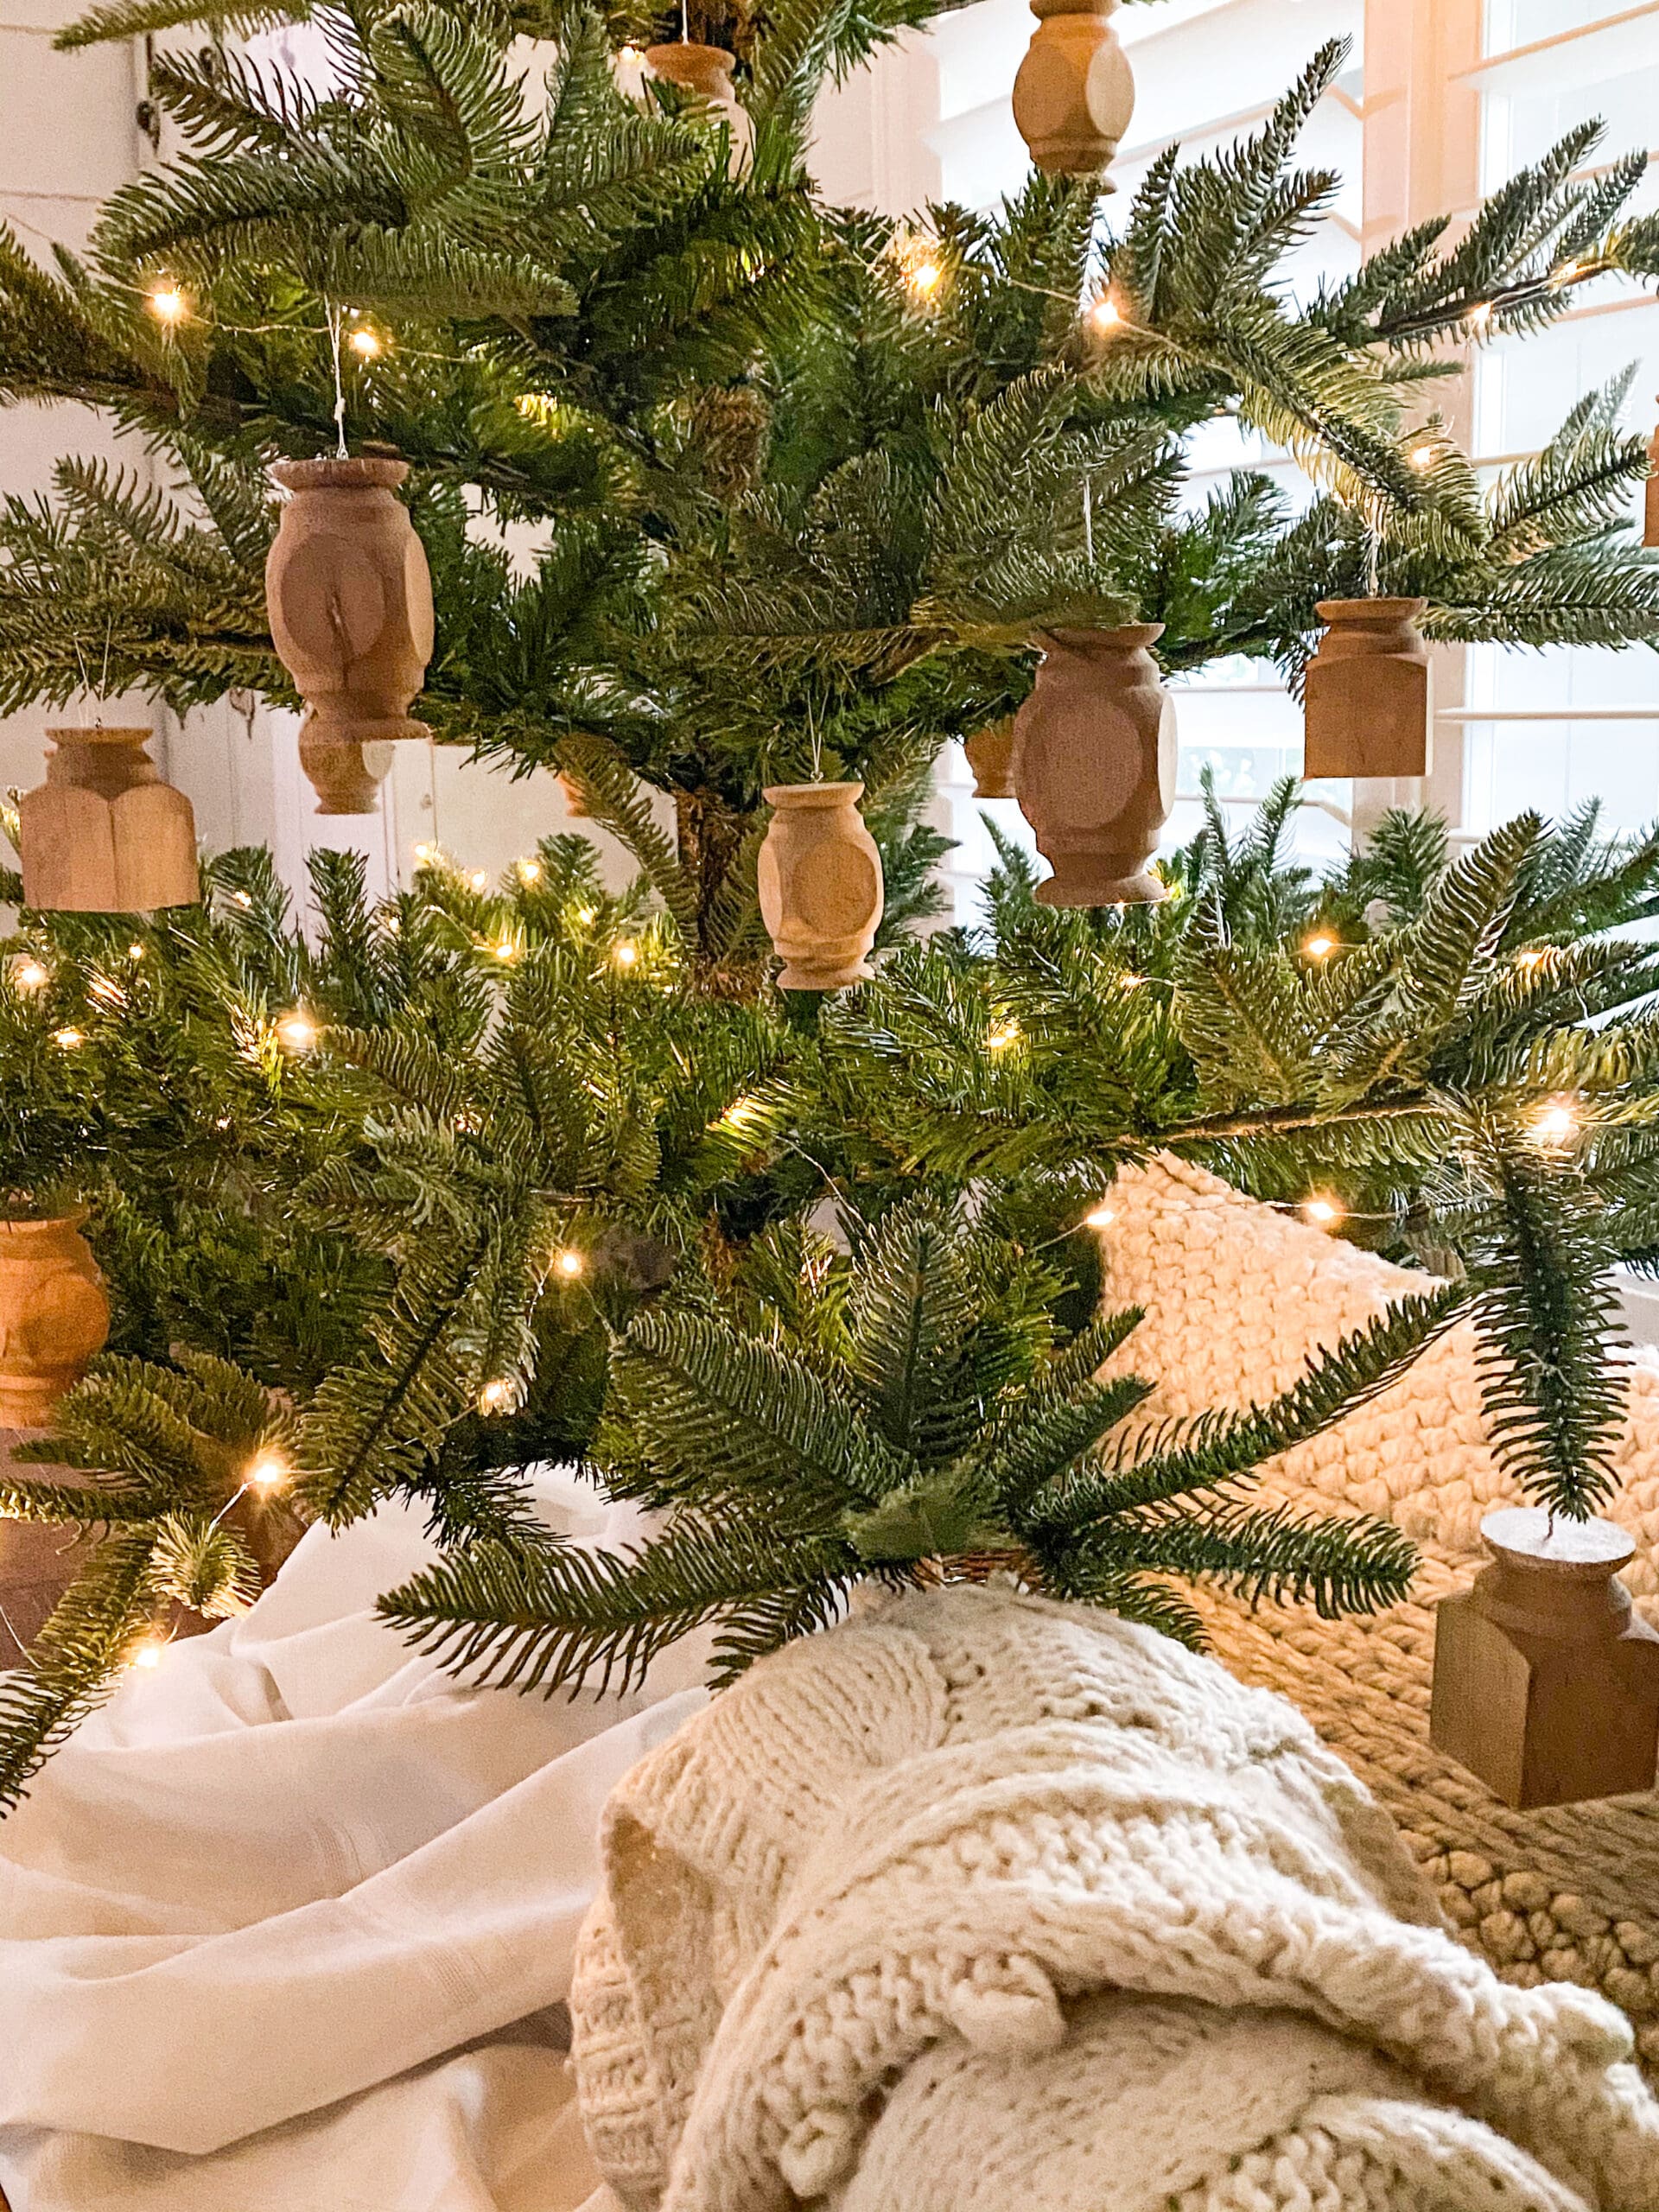 DIY Christmas Tags Tree Ornament Wood Blanks Traditional Christmas